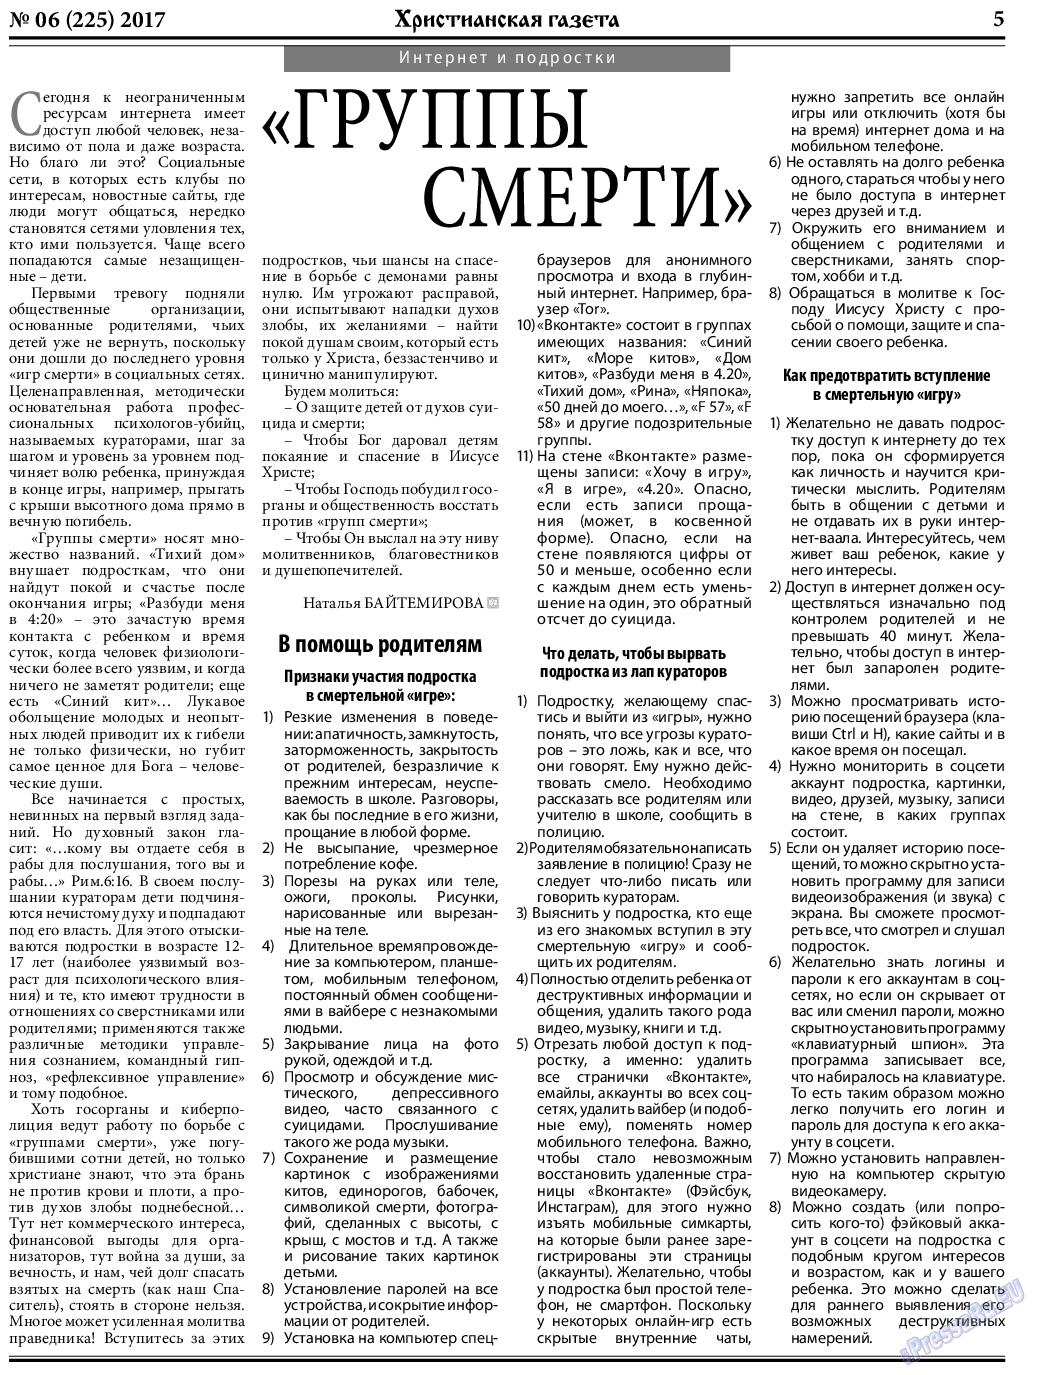 Христианская газета, газета. 2017 №6 стр.5